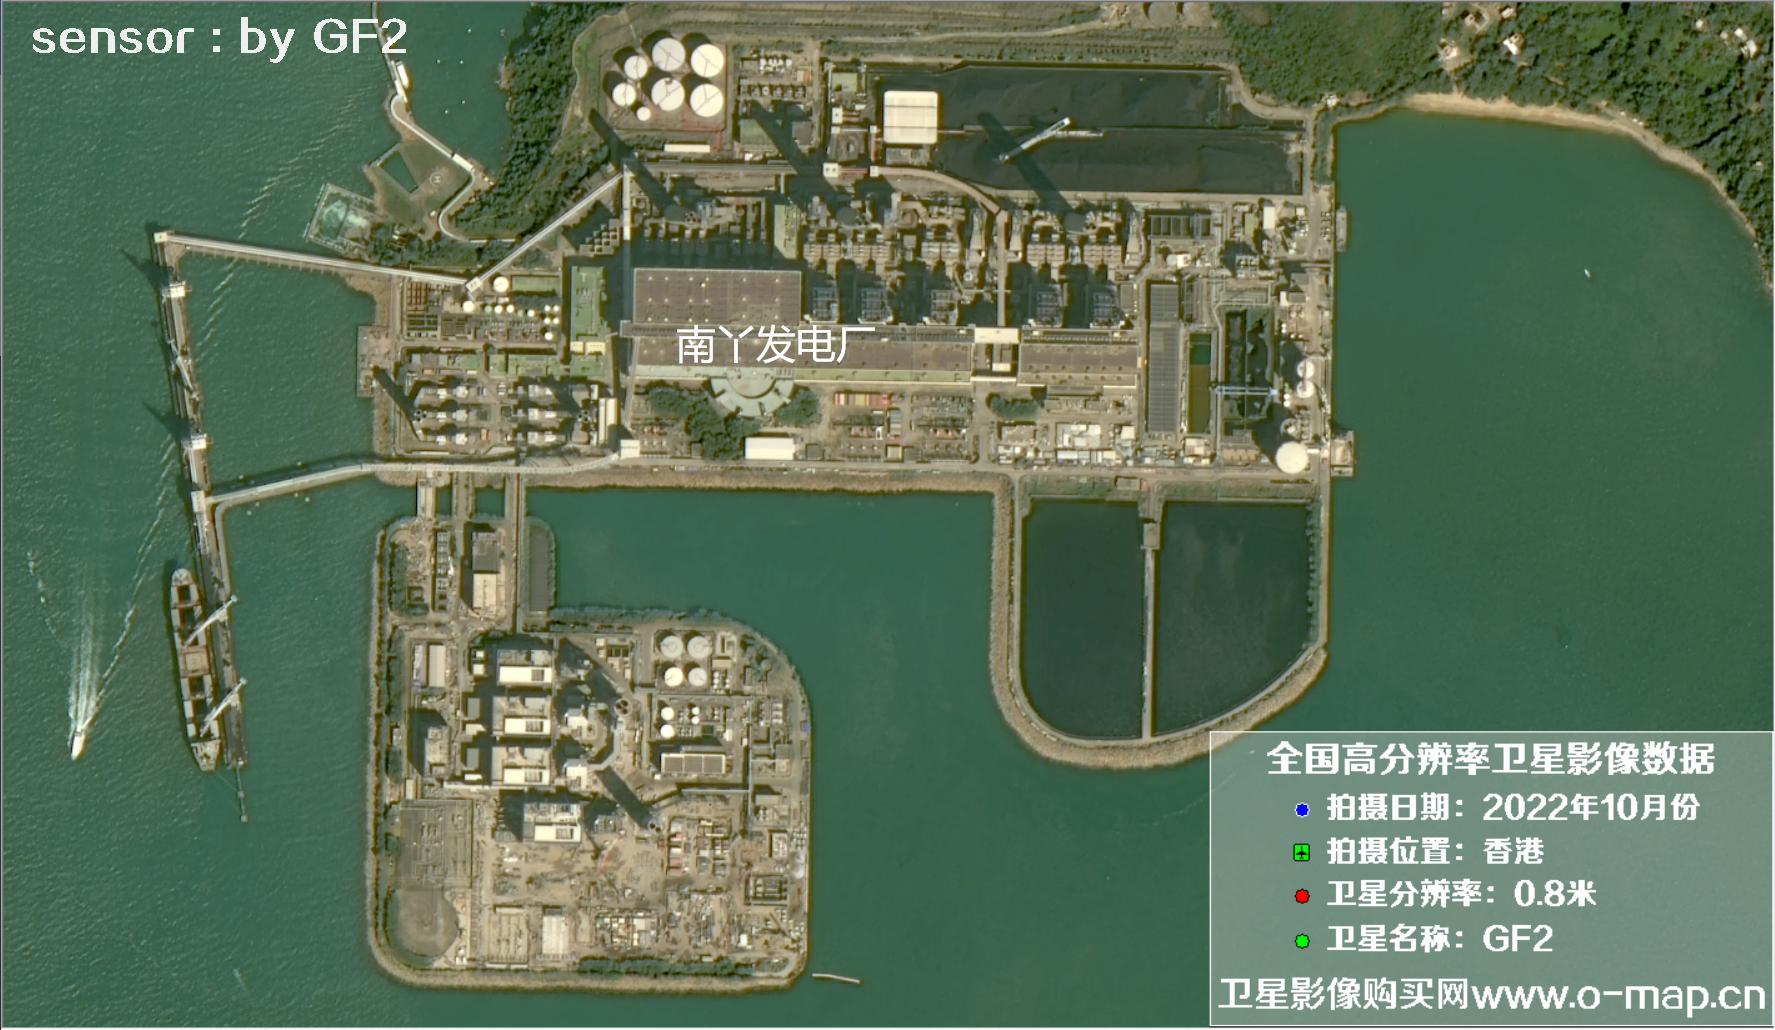 GF2卫星2022年10月份拍摄的香港南区南侧沿岸卫星图